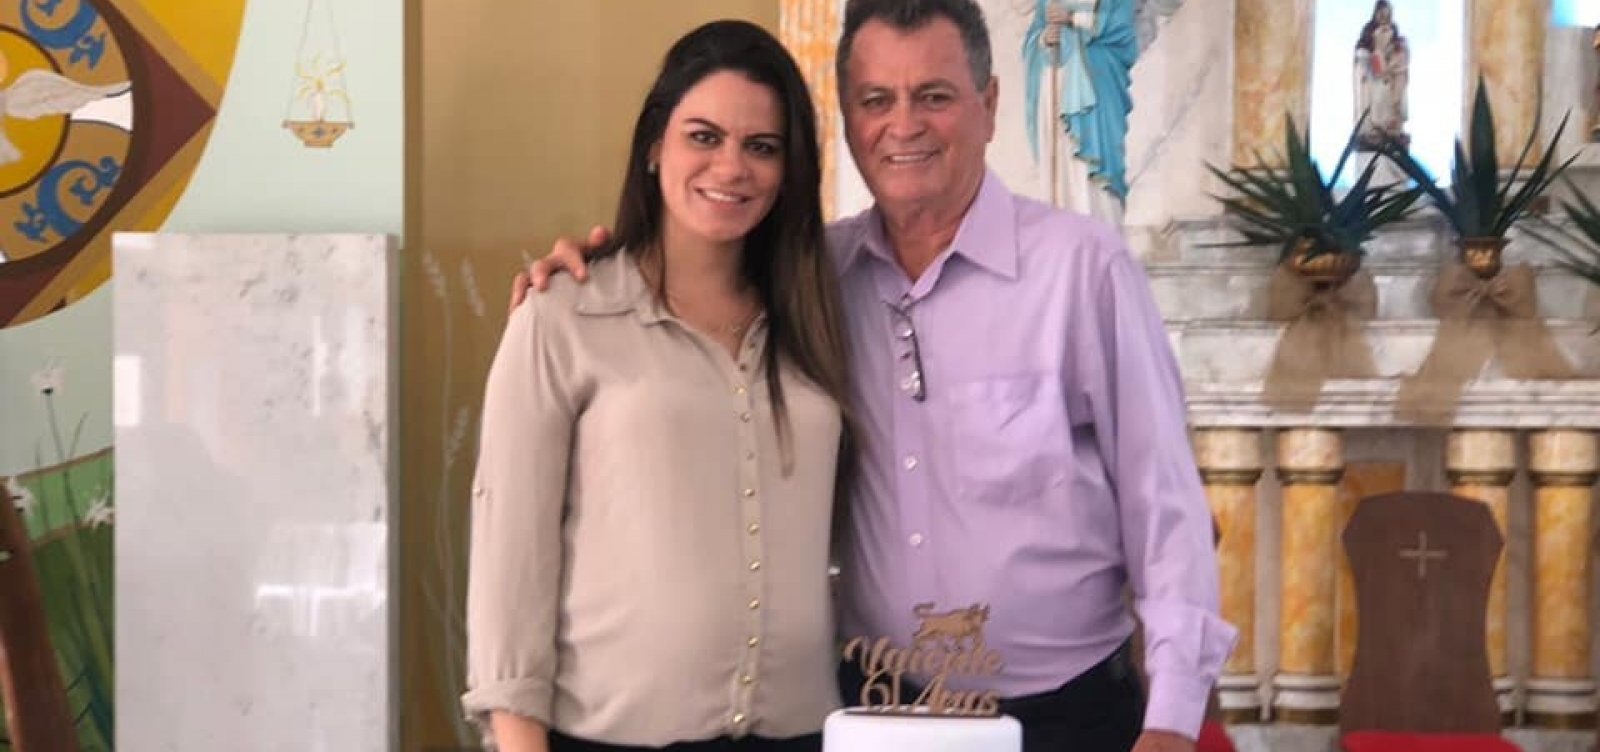 Vereadora de Valente renuncia cargo alegando 'perseguição política' contra seu pai